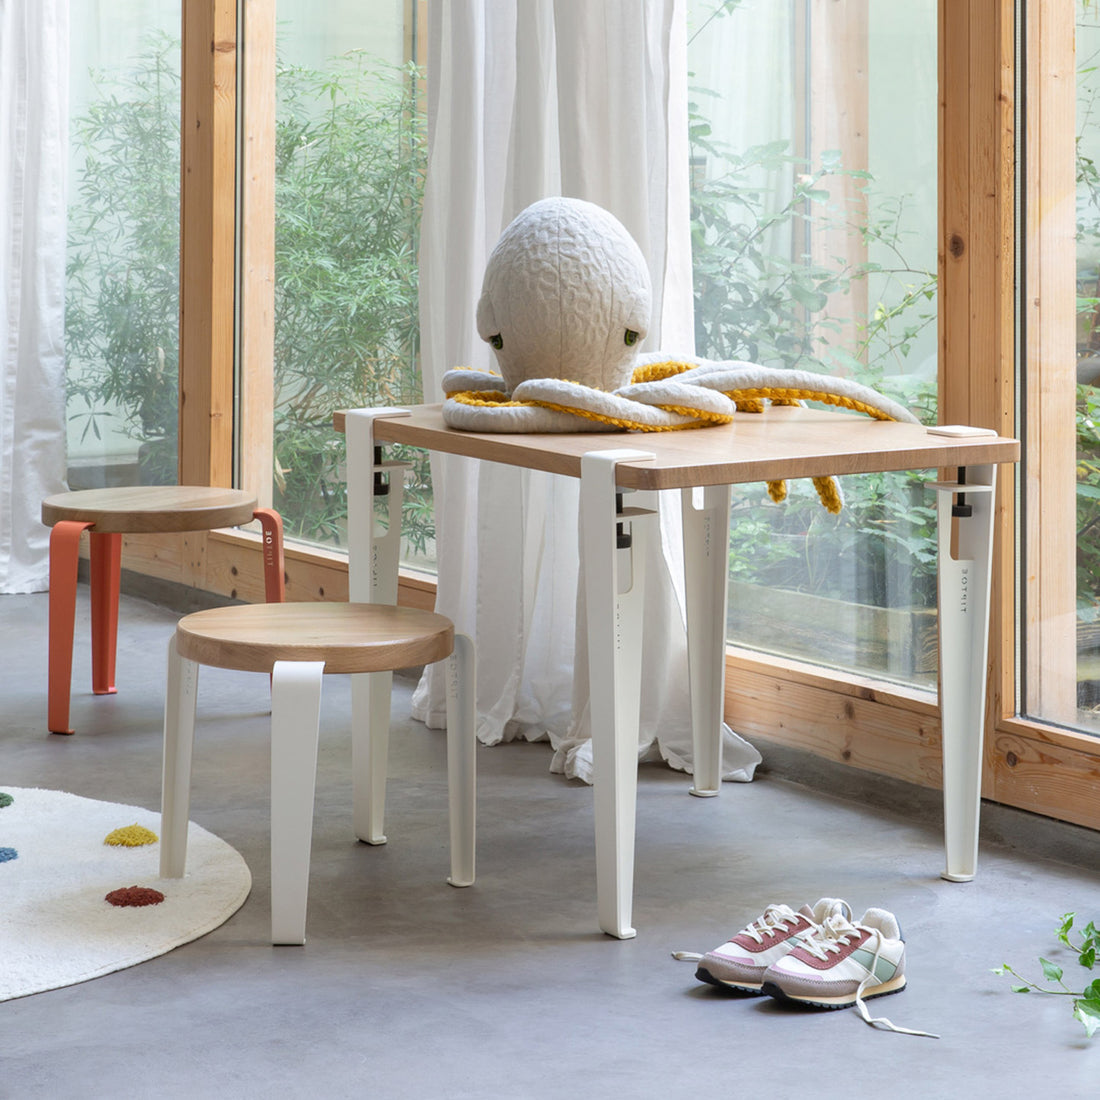 tiptoe-kids-desk-solid-oak-tabletop-with-legs-cloudy-white-70x50cm-tipt-stt07005023s01-tle050st1mz100- (7)